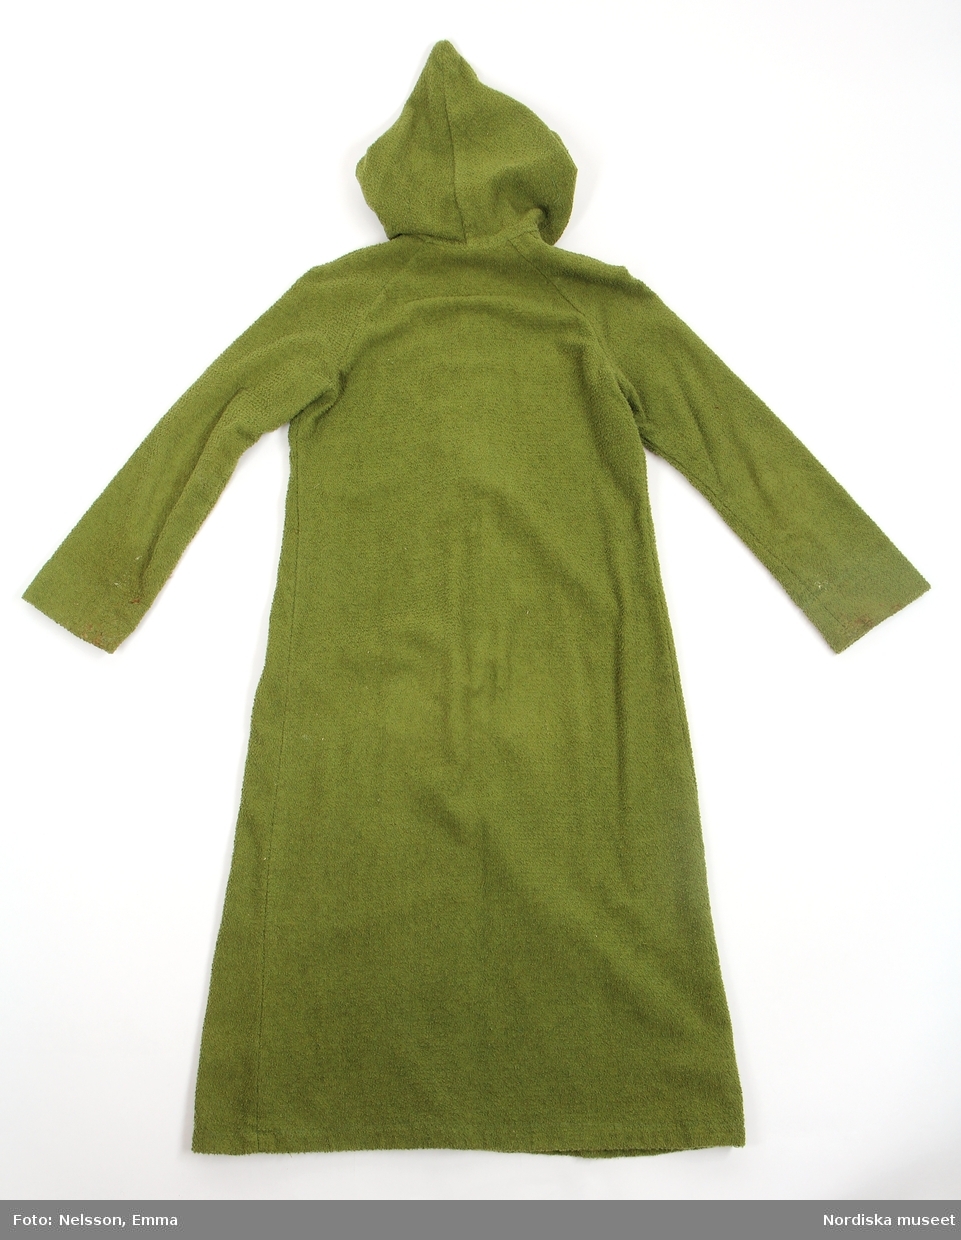 Katalogkort:
"Morgonrock av grön frotté. Utställd modell med huva och långa ärmar. Dragkedja från halslinning till 36 cm från fåll."